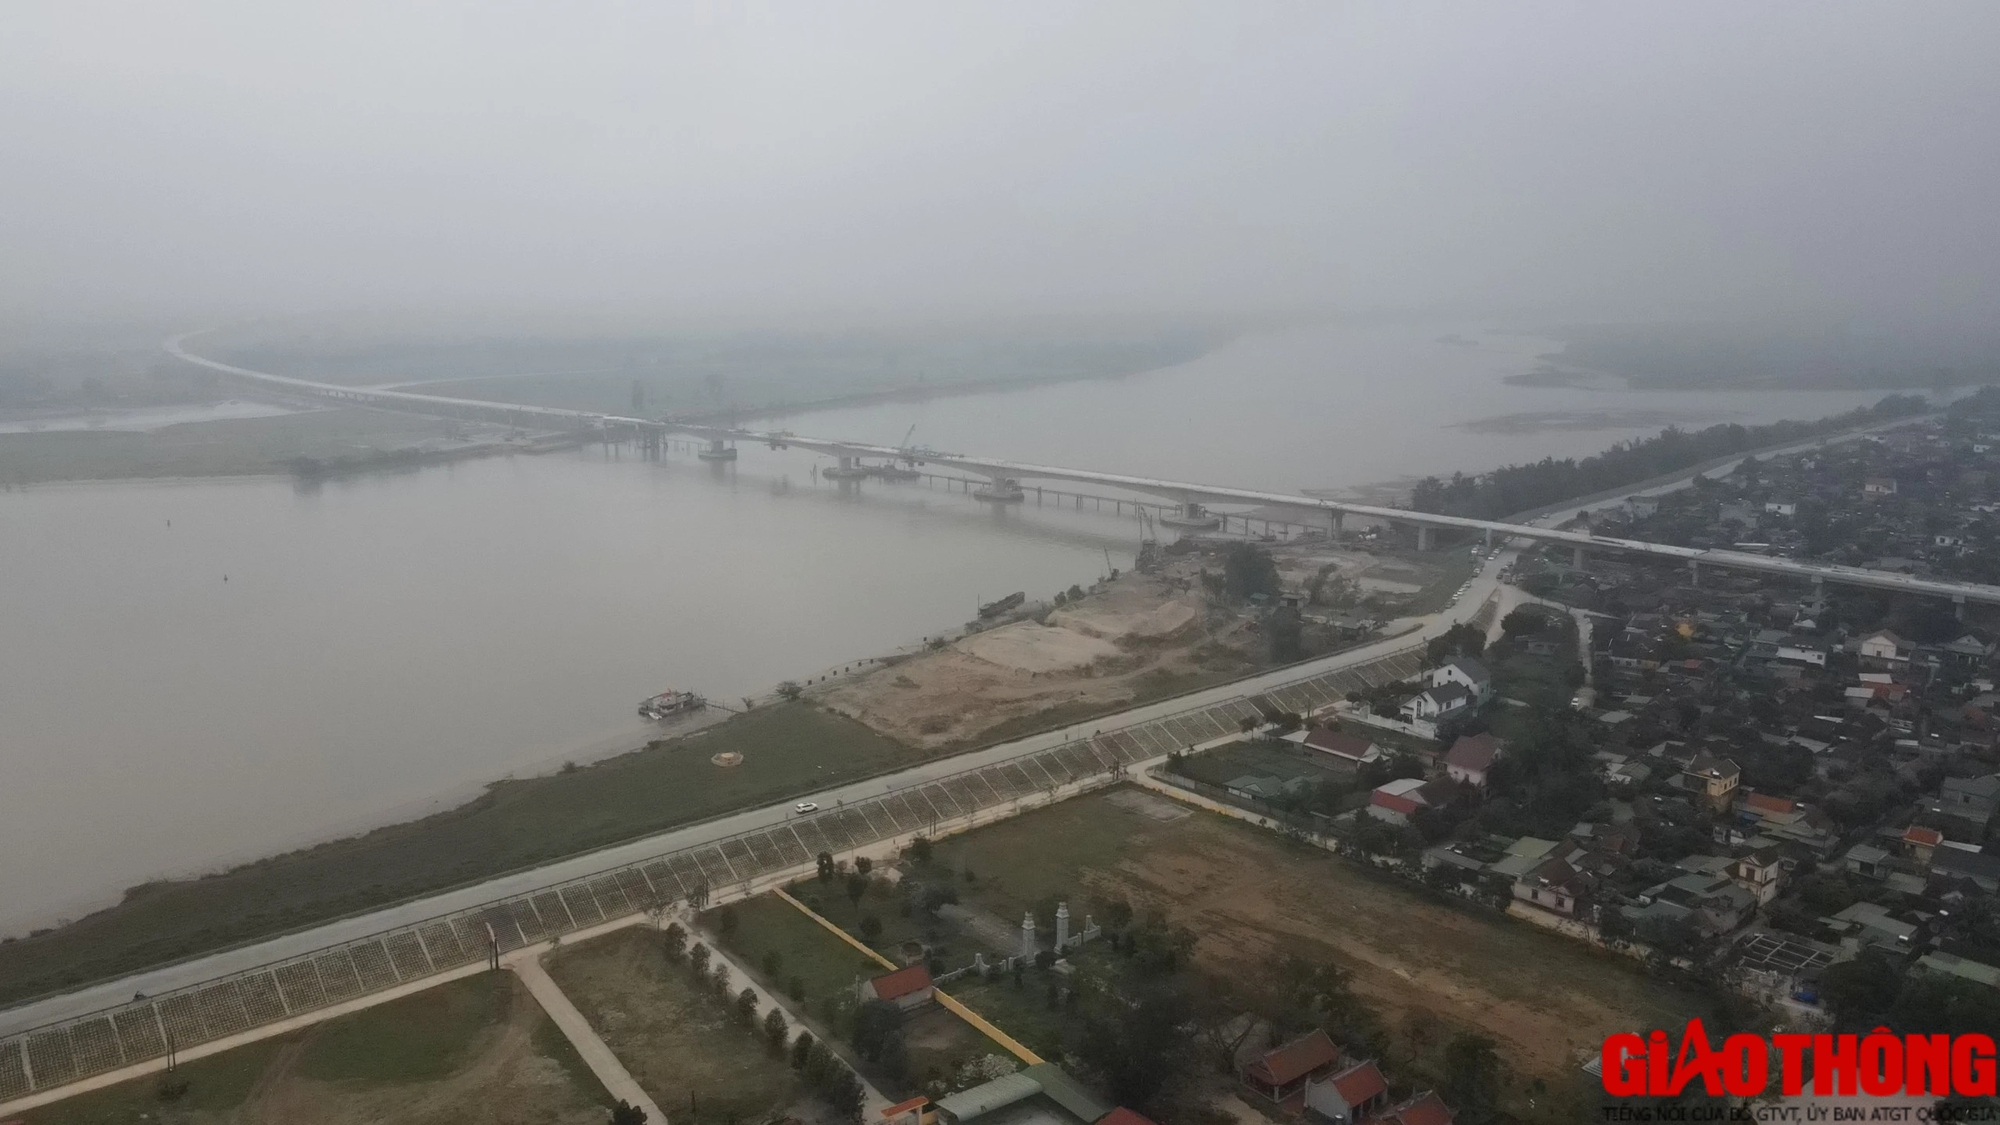 Hợp long cầu vượt sông dài nhất cao tốc Bắc - Nam- Ảnh 1.